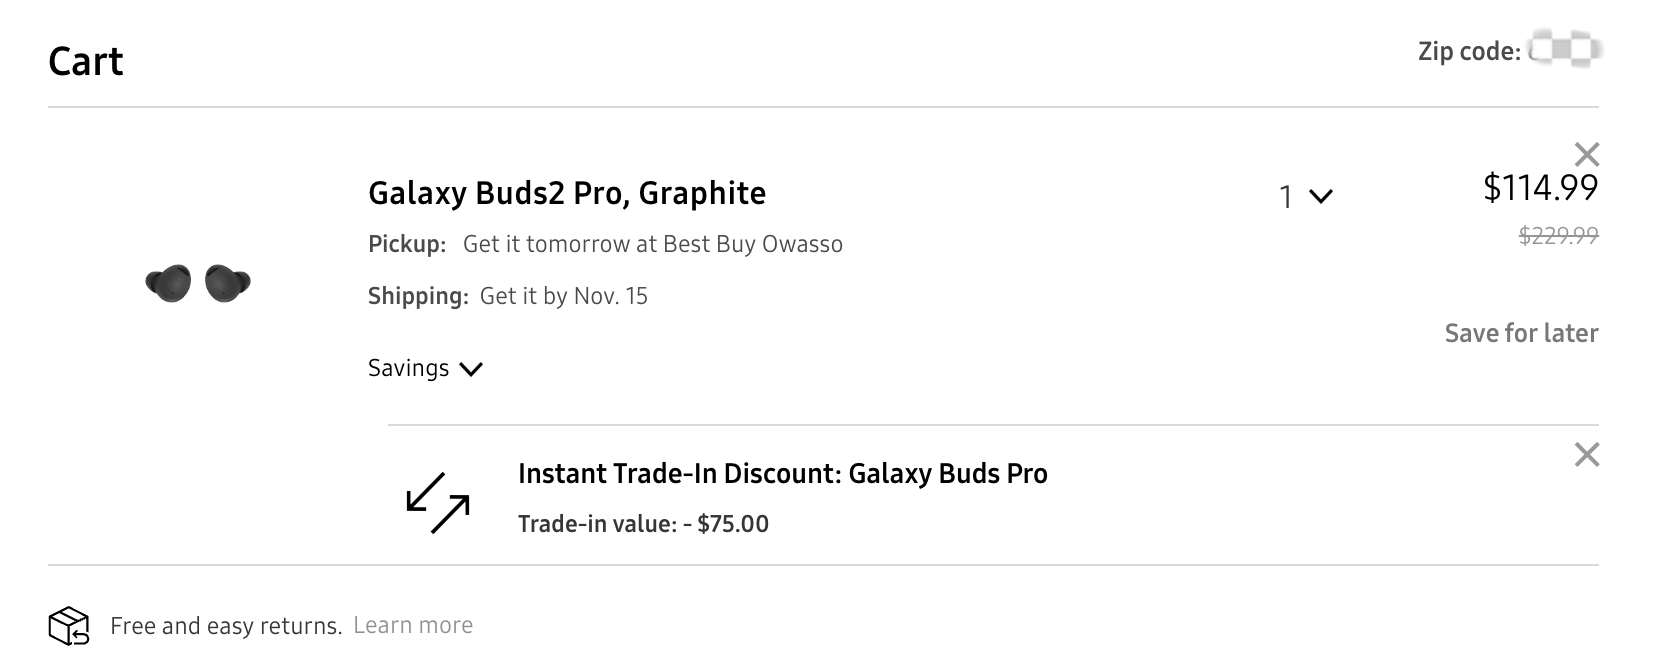 三星美国官网大促销Galaxy Buds2 Pro无线蓝牙耳机最高节省115美元